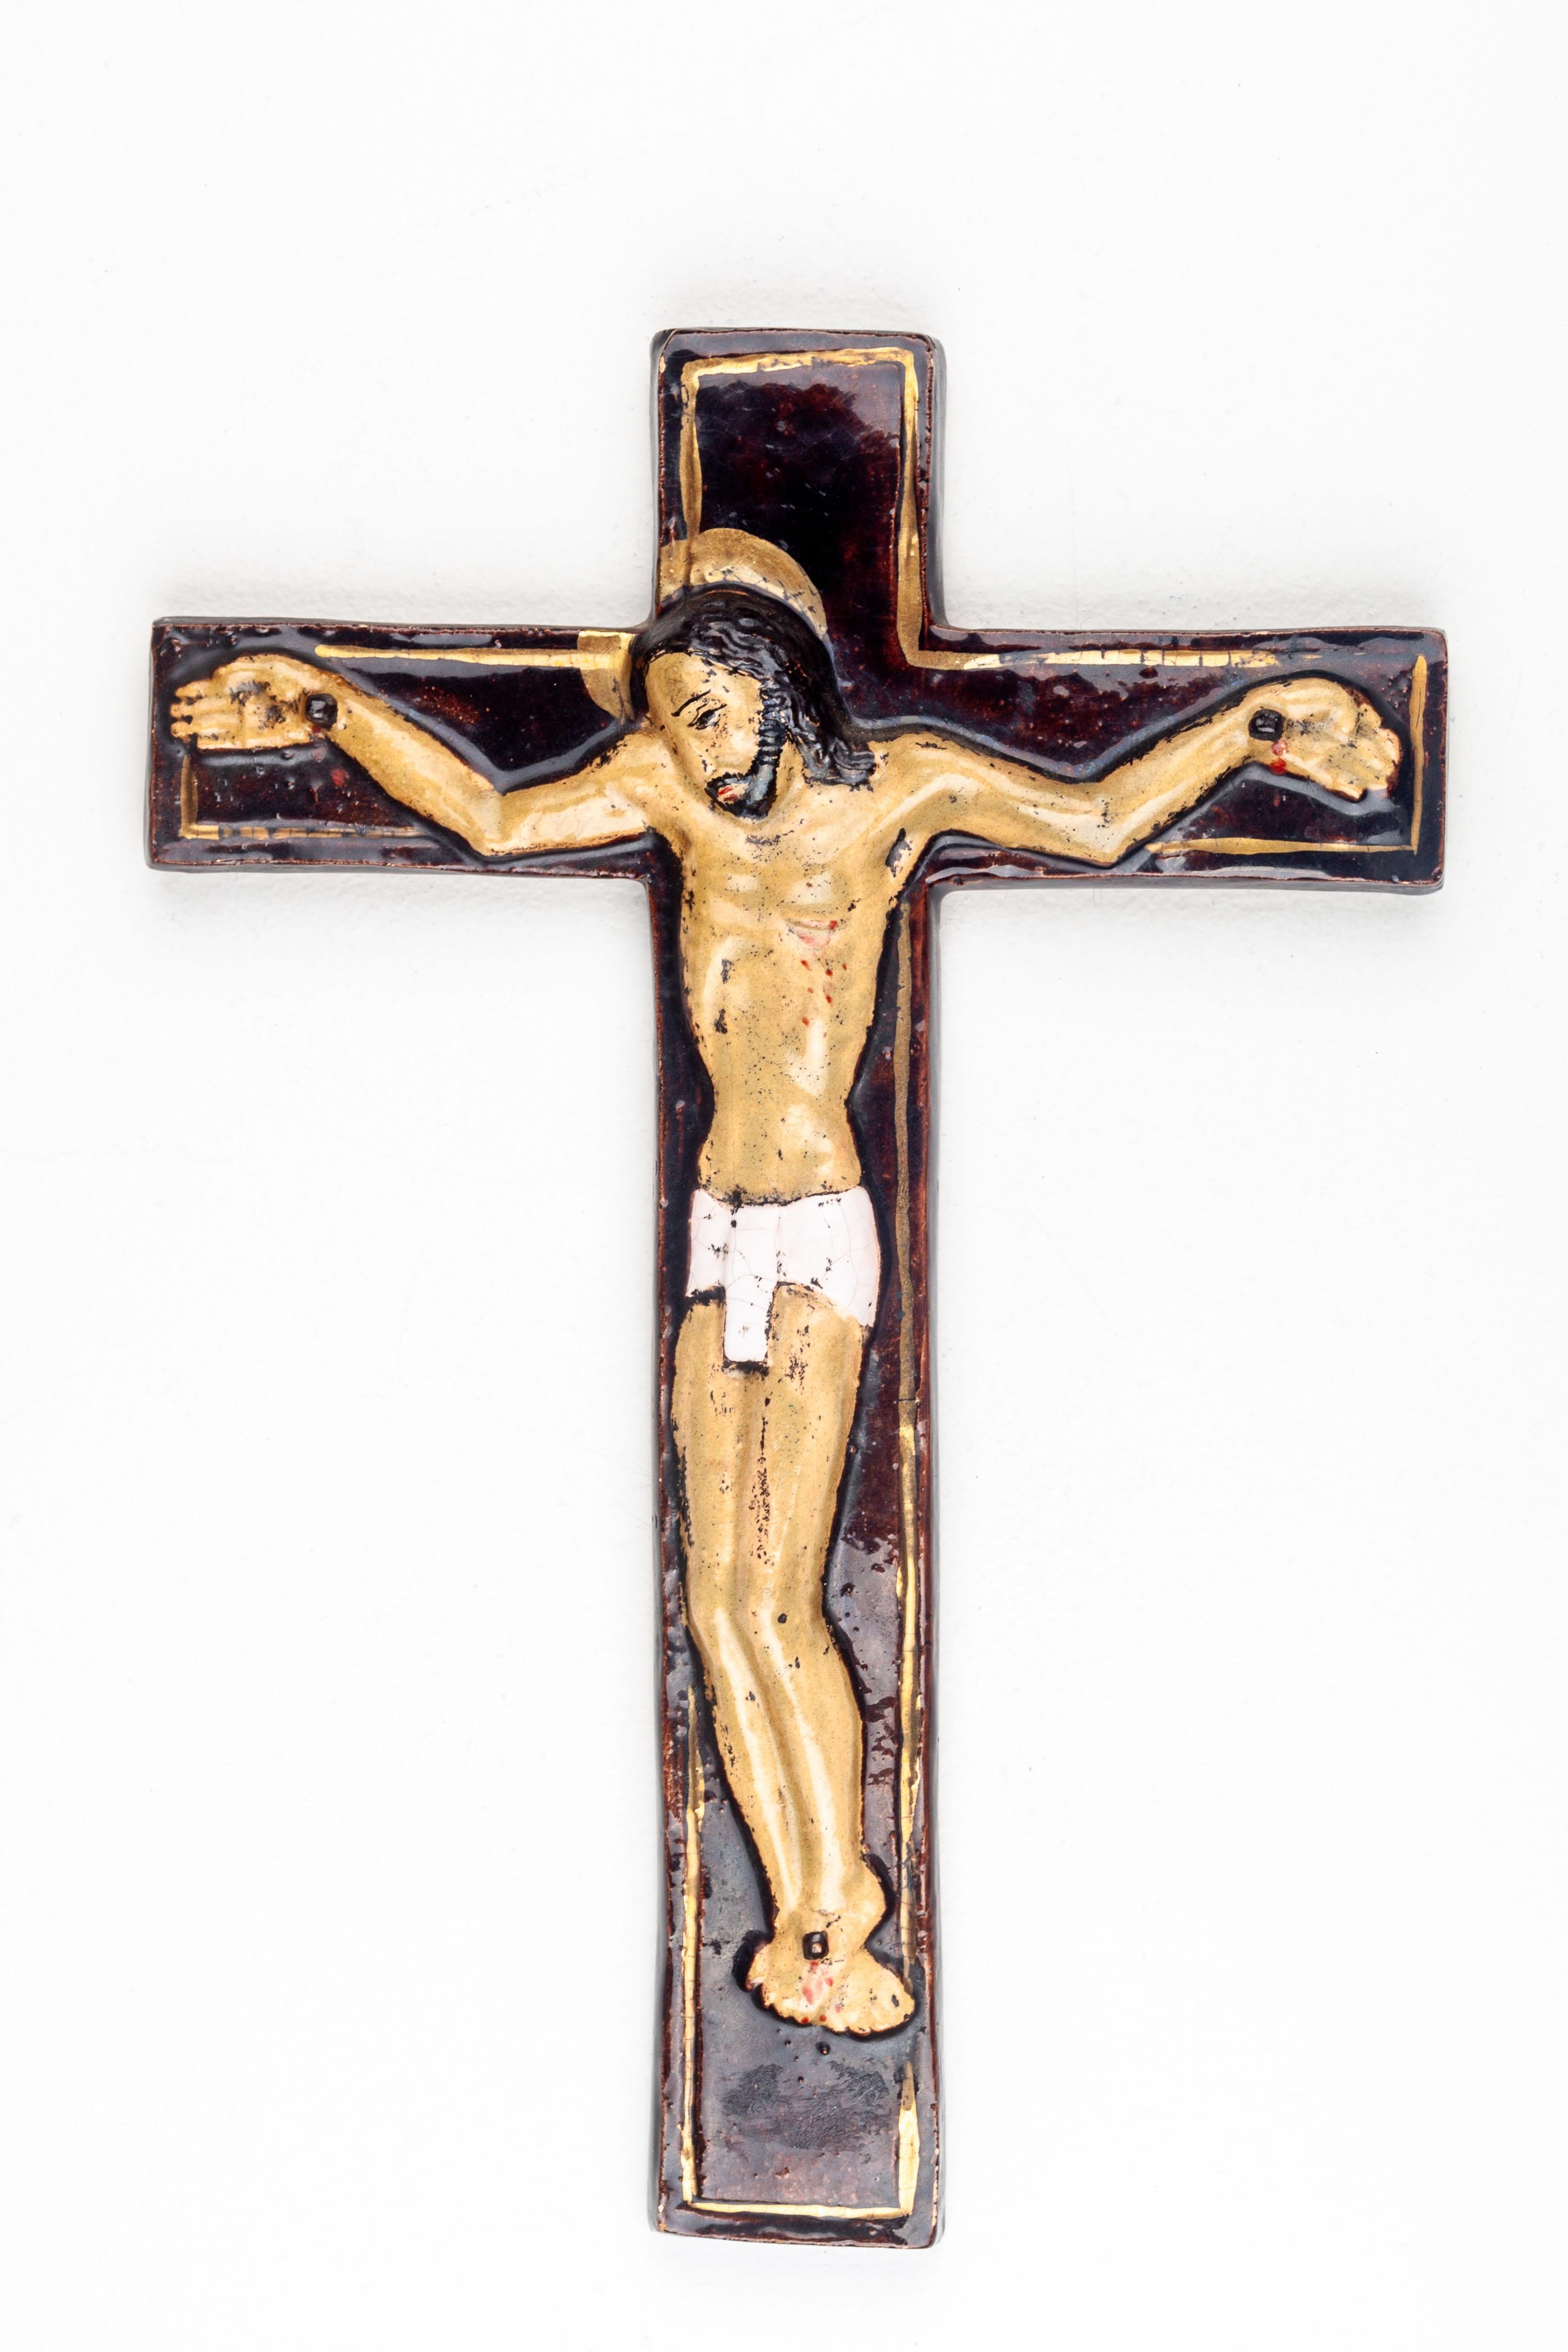 Dieses moderne Kruzifix aus der Mitte des Jahrhunderts ist ein ergreifendes Beispiel europäischer Studiotöpferei, das die spirituelle Gravitas religiöser Kunst mit den ästhetischen Grundsätzen der Epoche verbindet. Die Figur des Christus ist in